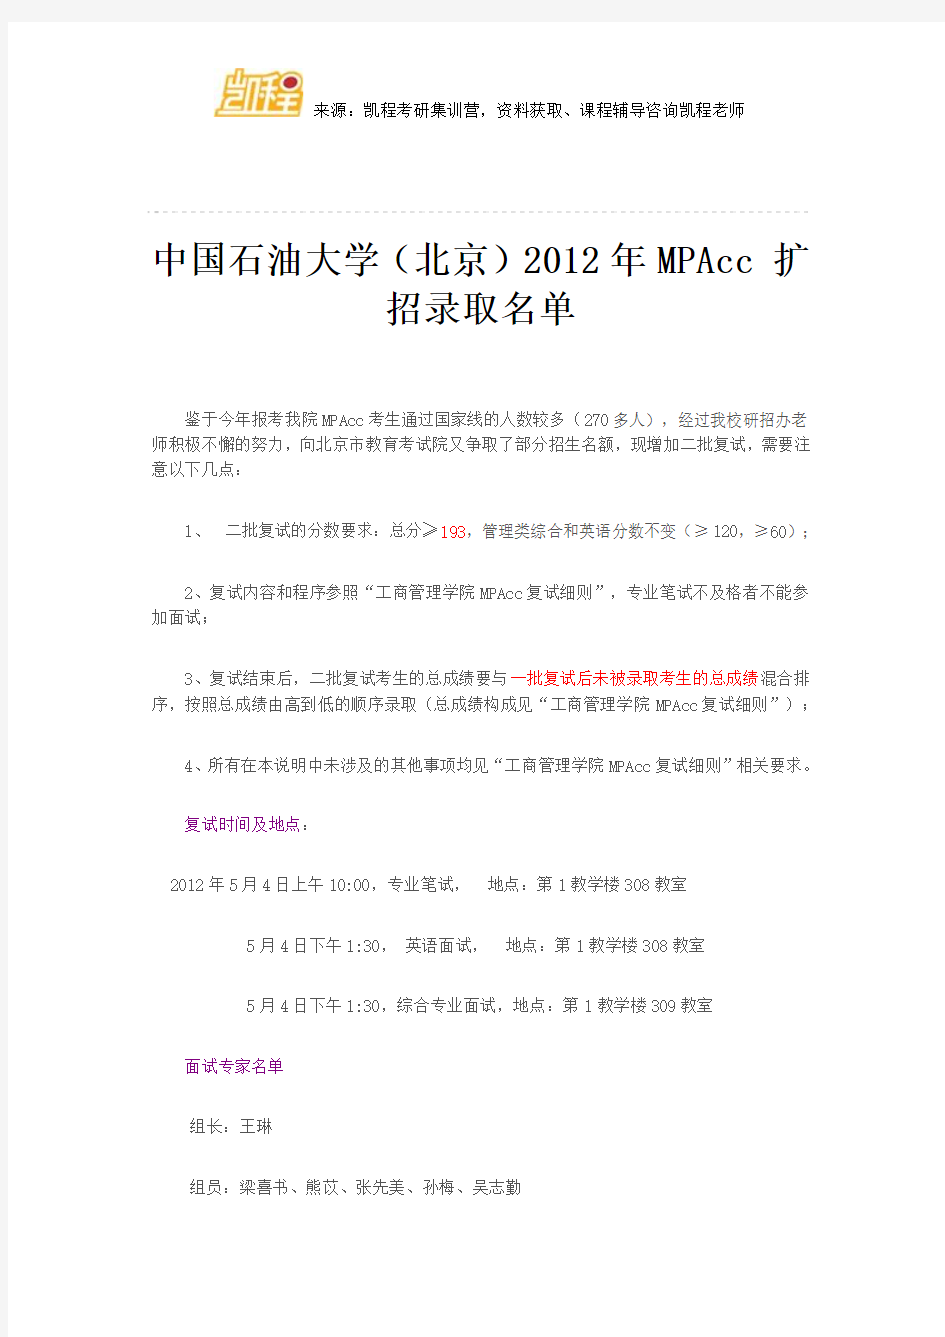 中国石油大学(北京)2012年MPAcc 扩招录取名单